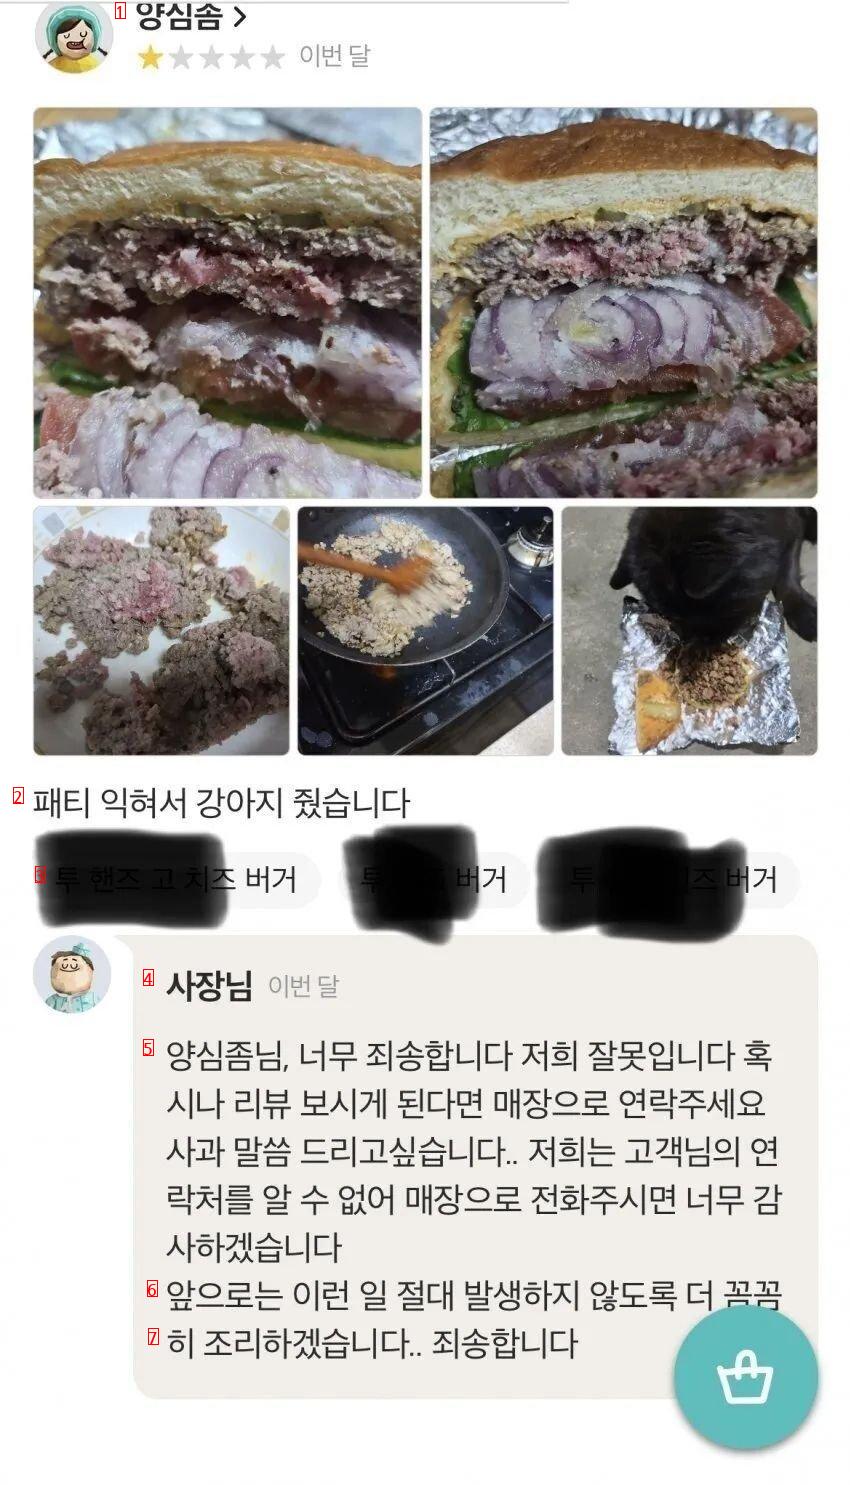 햄버거 개밥으로 던져줬다는 배민 리뷰.jpg